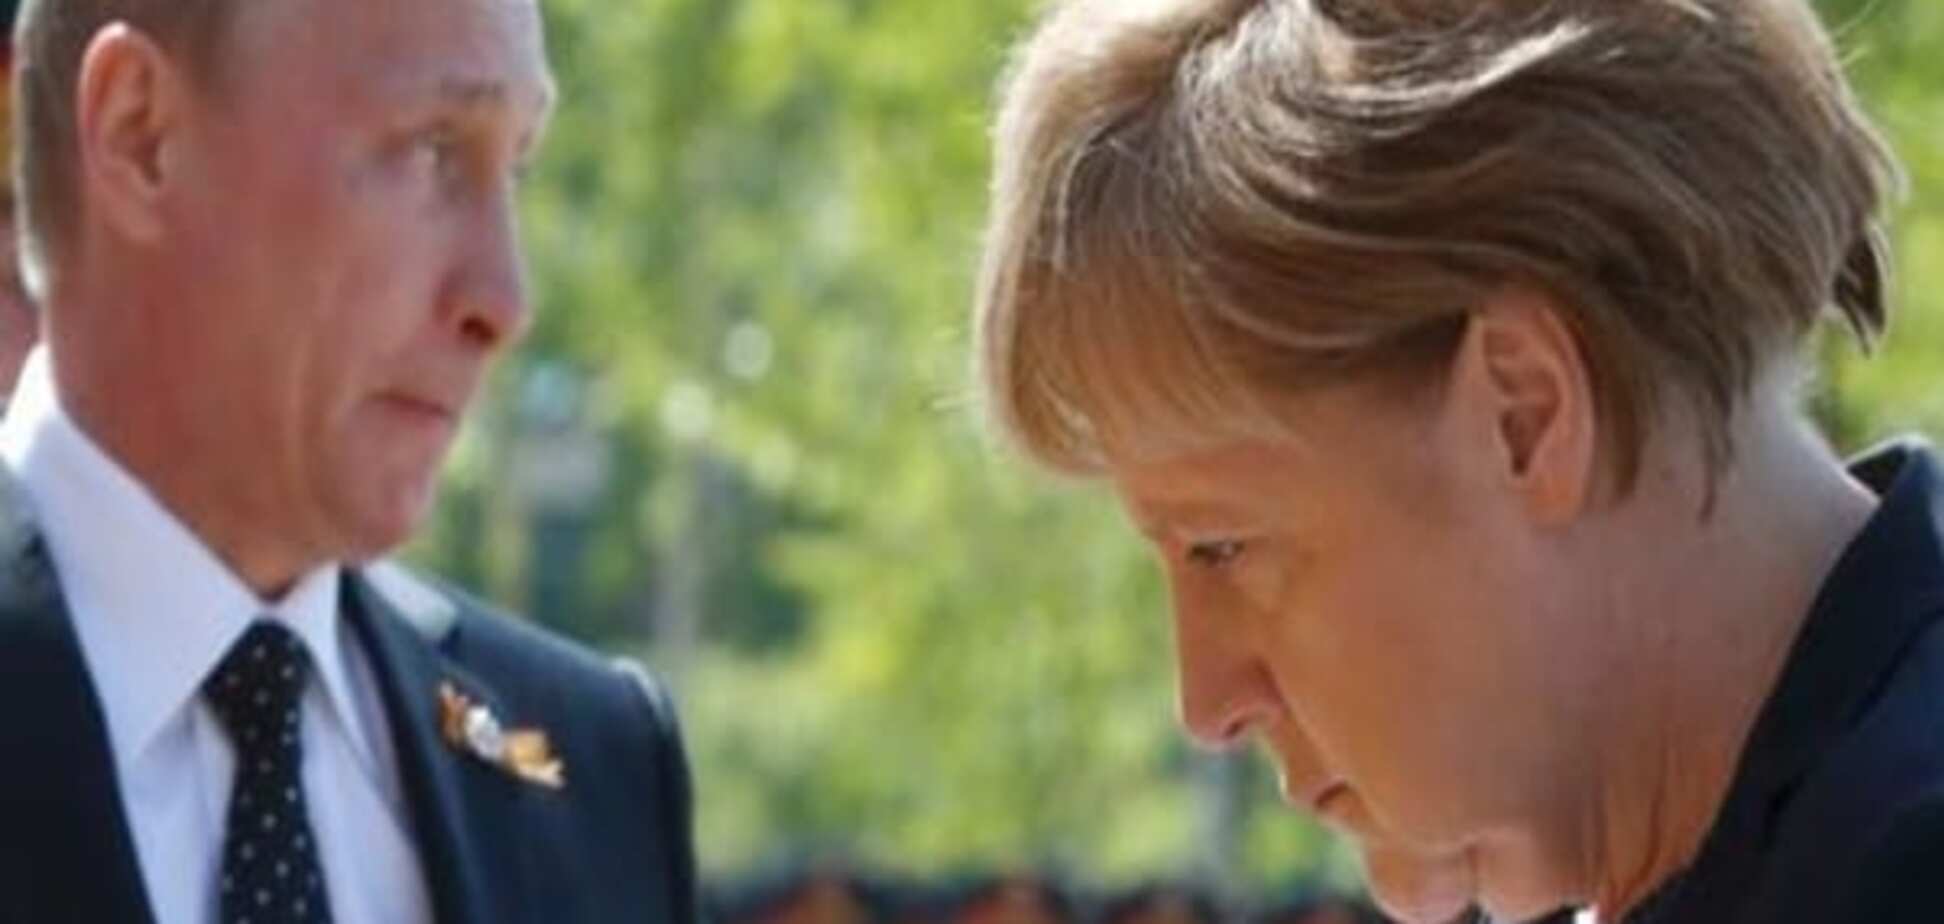 Коментар: Анґелі Меркель загрожує провал